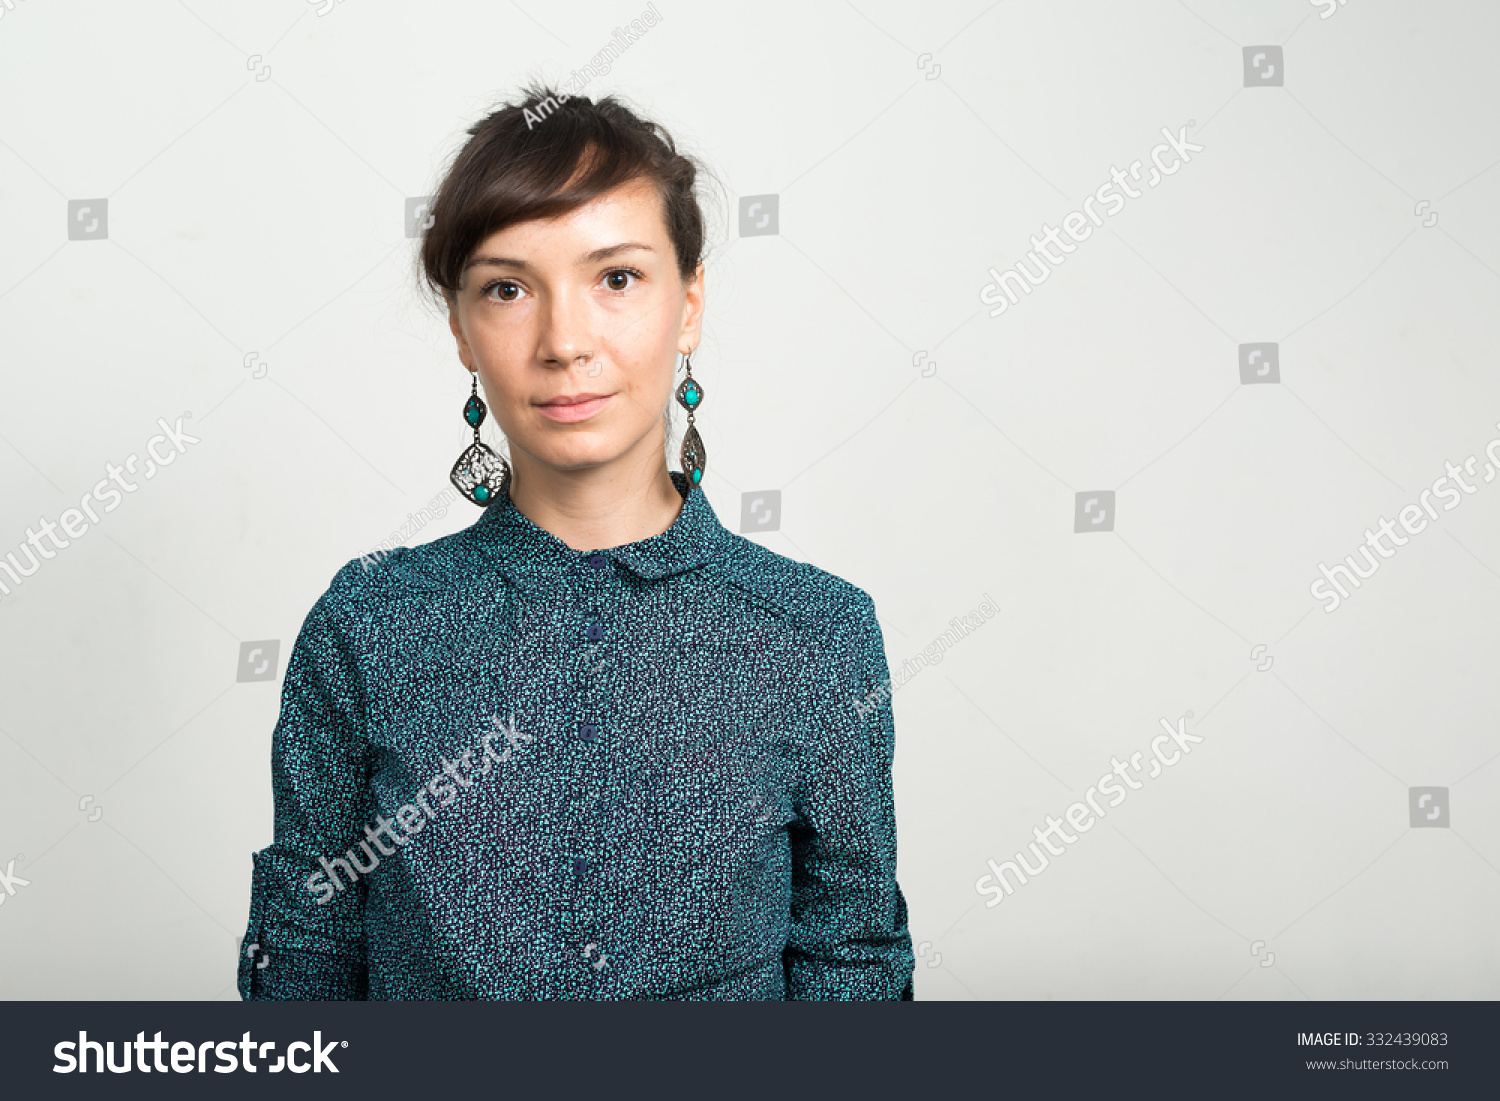 Portrait Of Woman Stock Photo 332439083 : Shutterstock